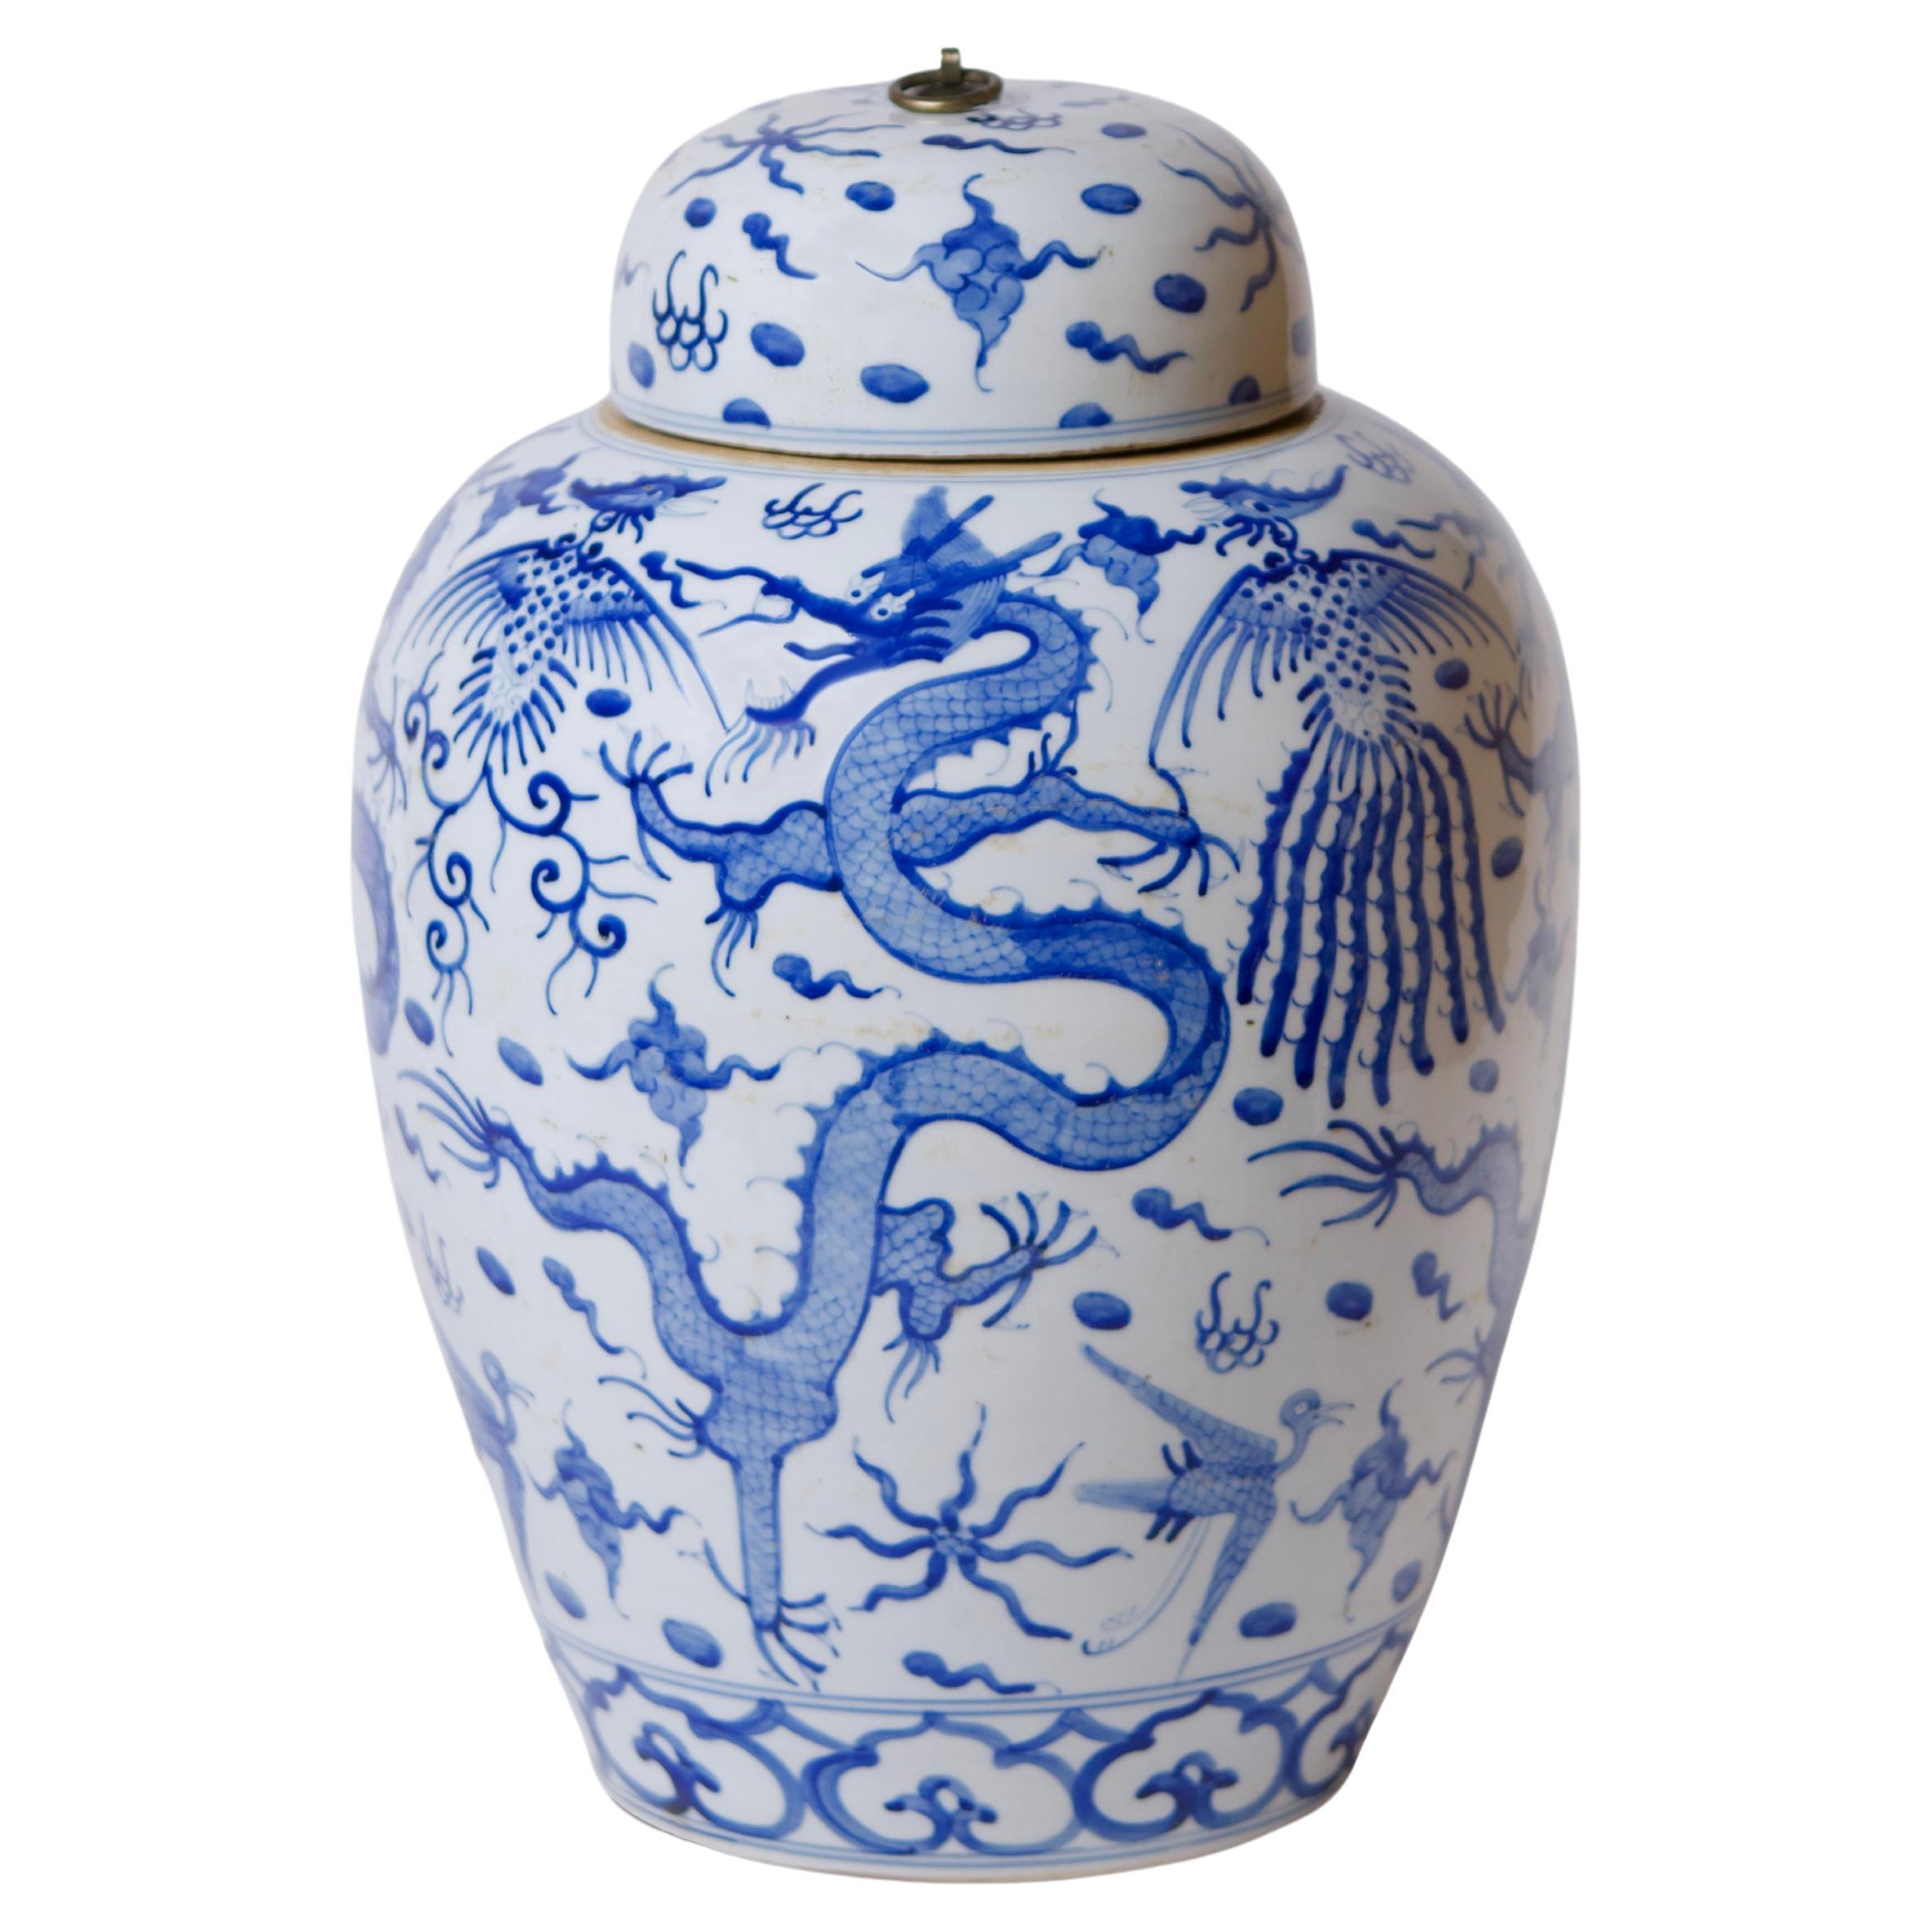 Pot de temple en porcelaine bleu et blanc en forme de dragon